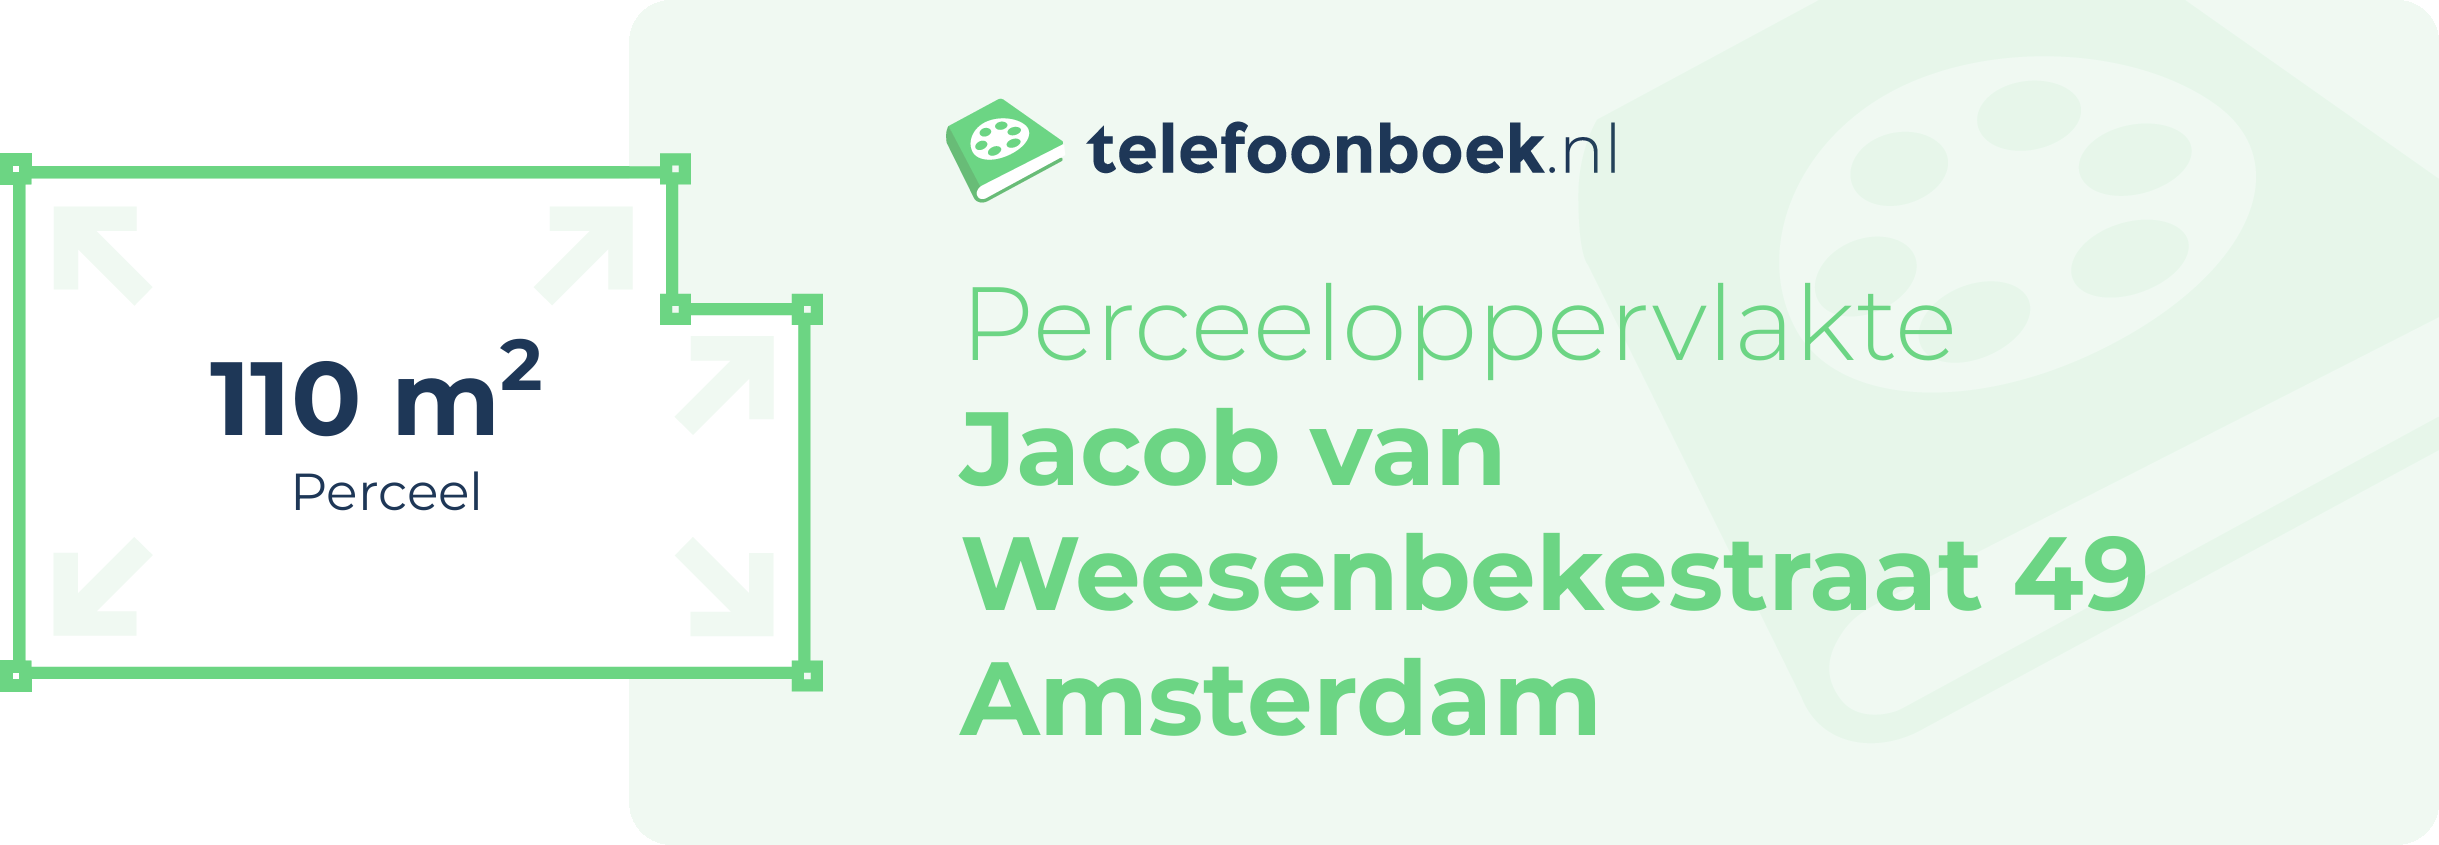 Perceeloppervlakte Jacob Van Weesenbekestraat 49 Amsterdam